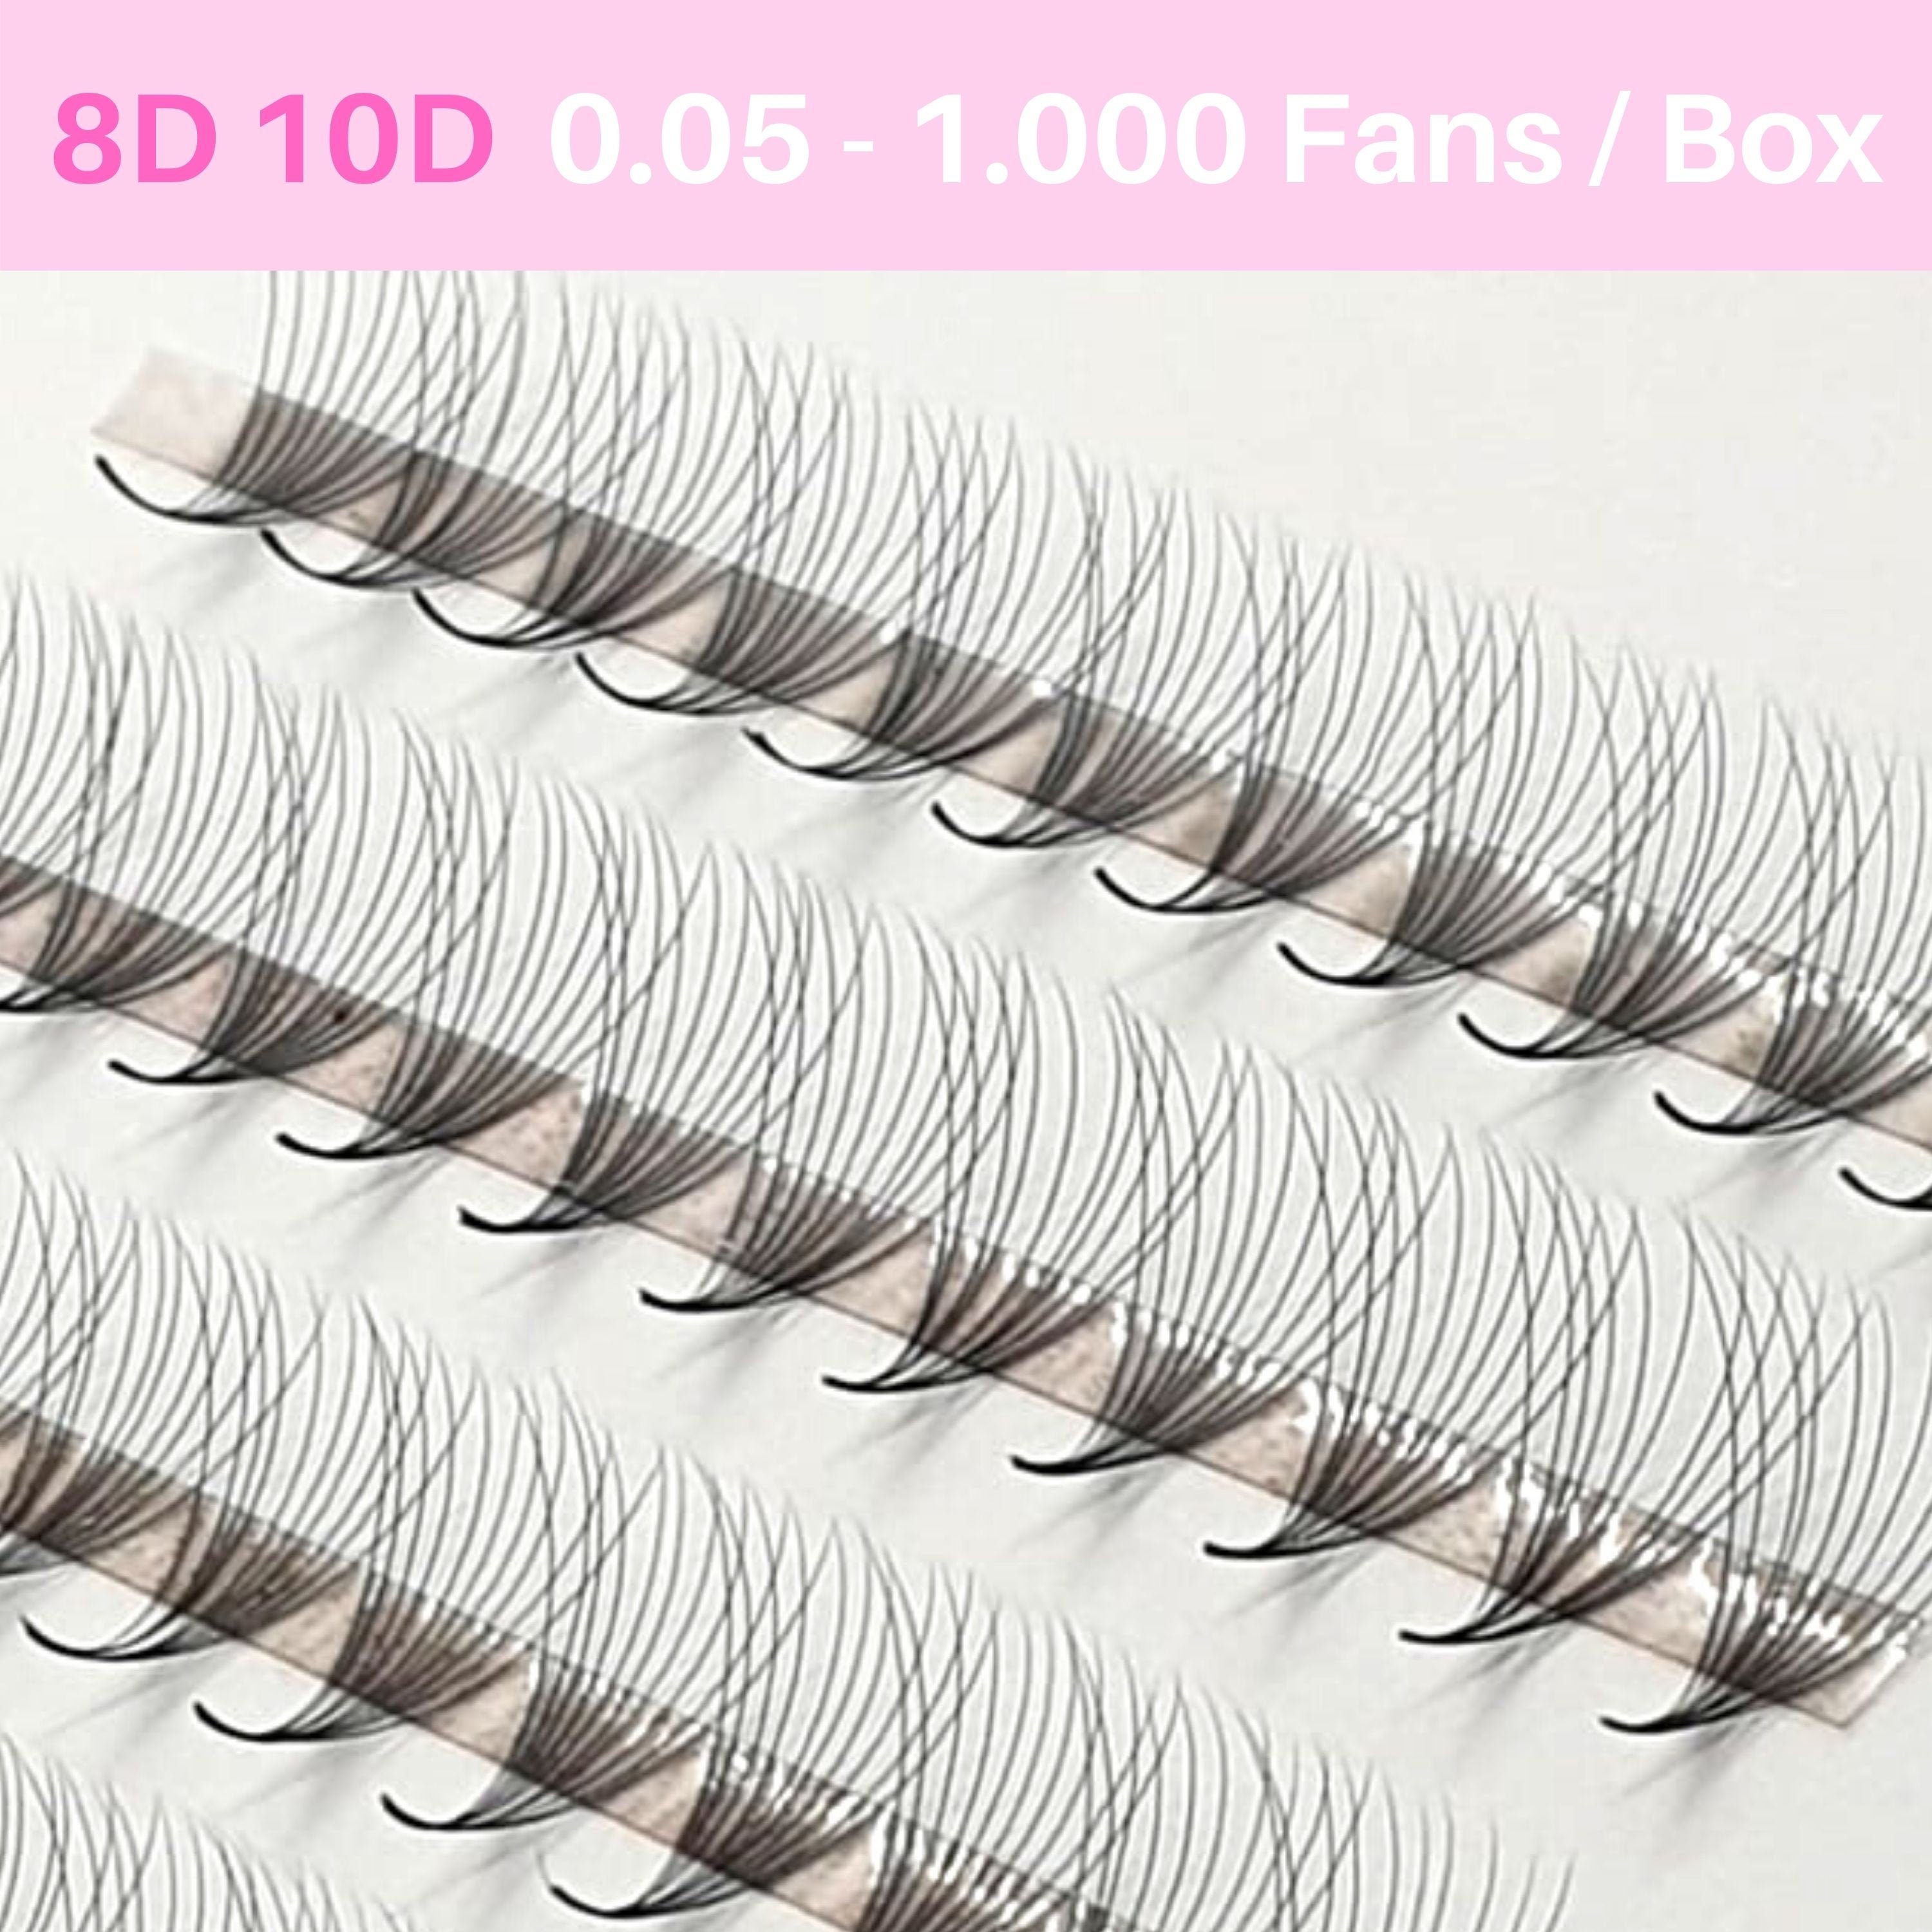 Udholdenhed melodramatiske tåge 8D-10D Promade Fans 0.05 1.000 Fans/box. Premade Fans Handmade - Etsy